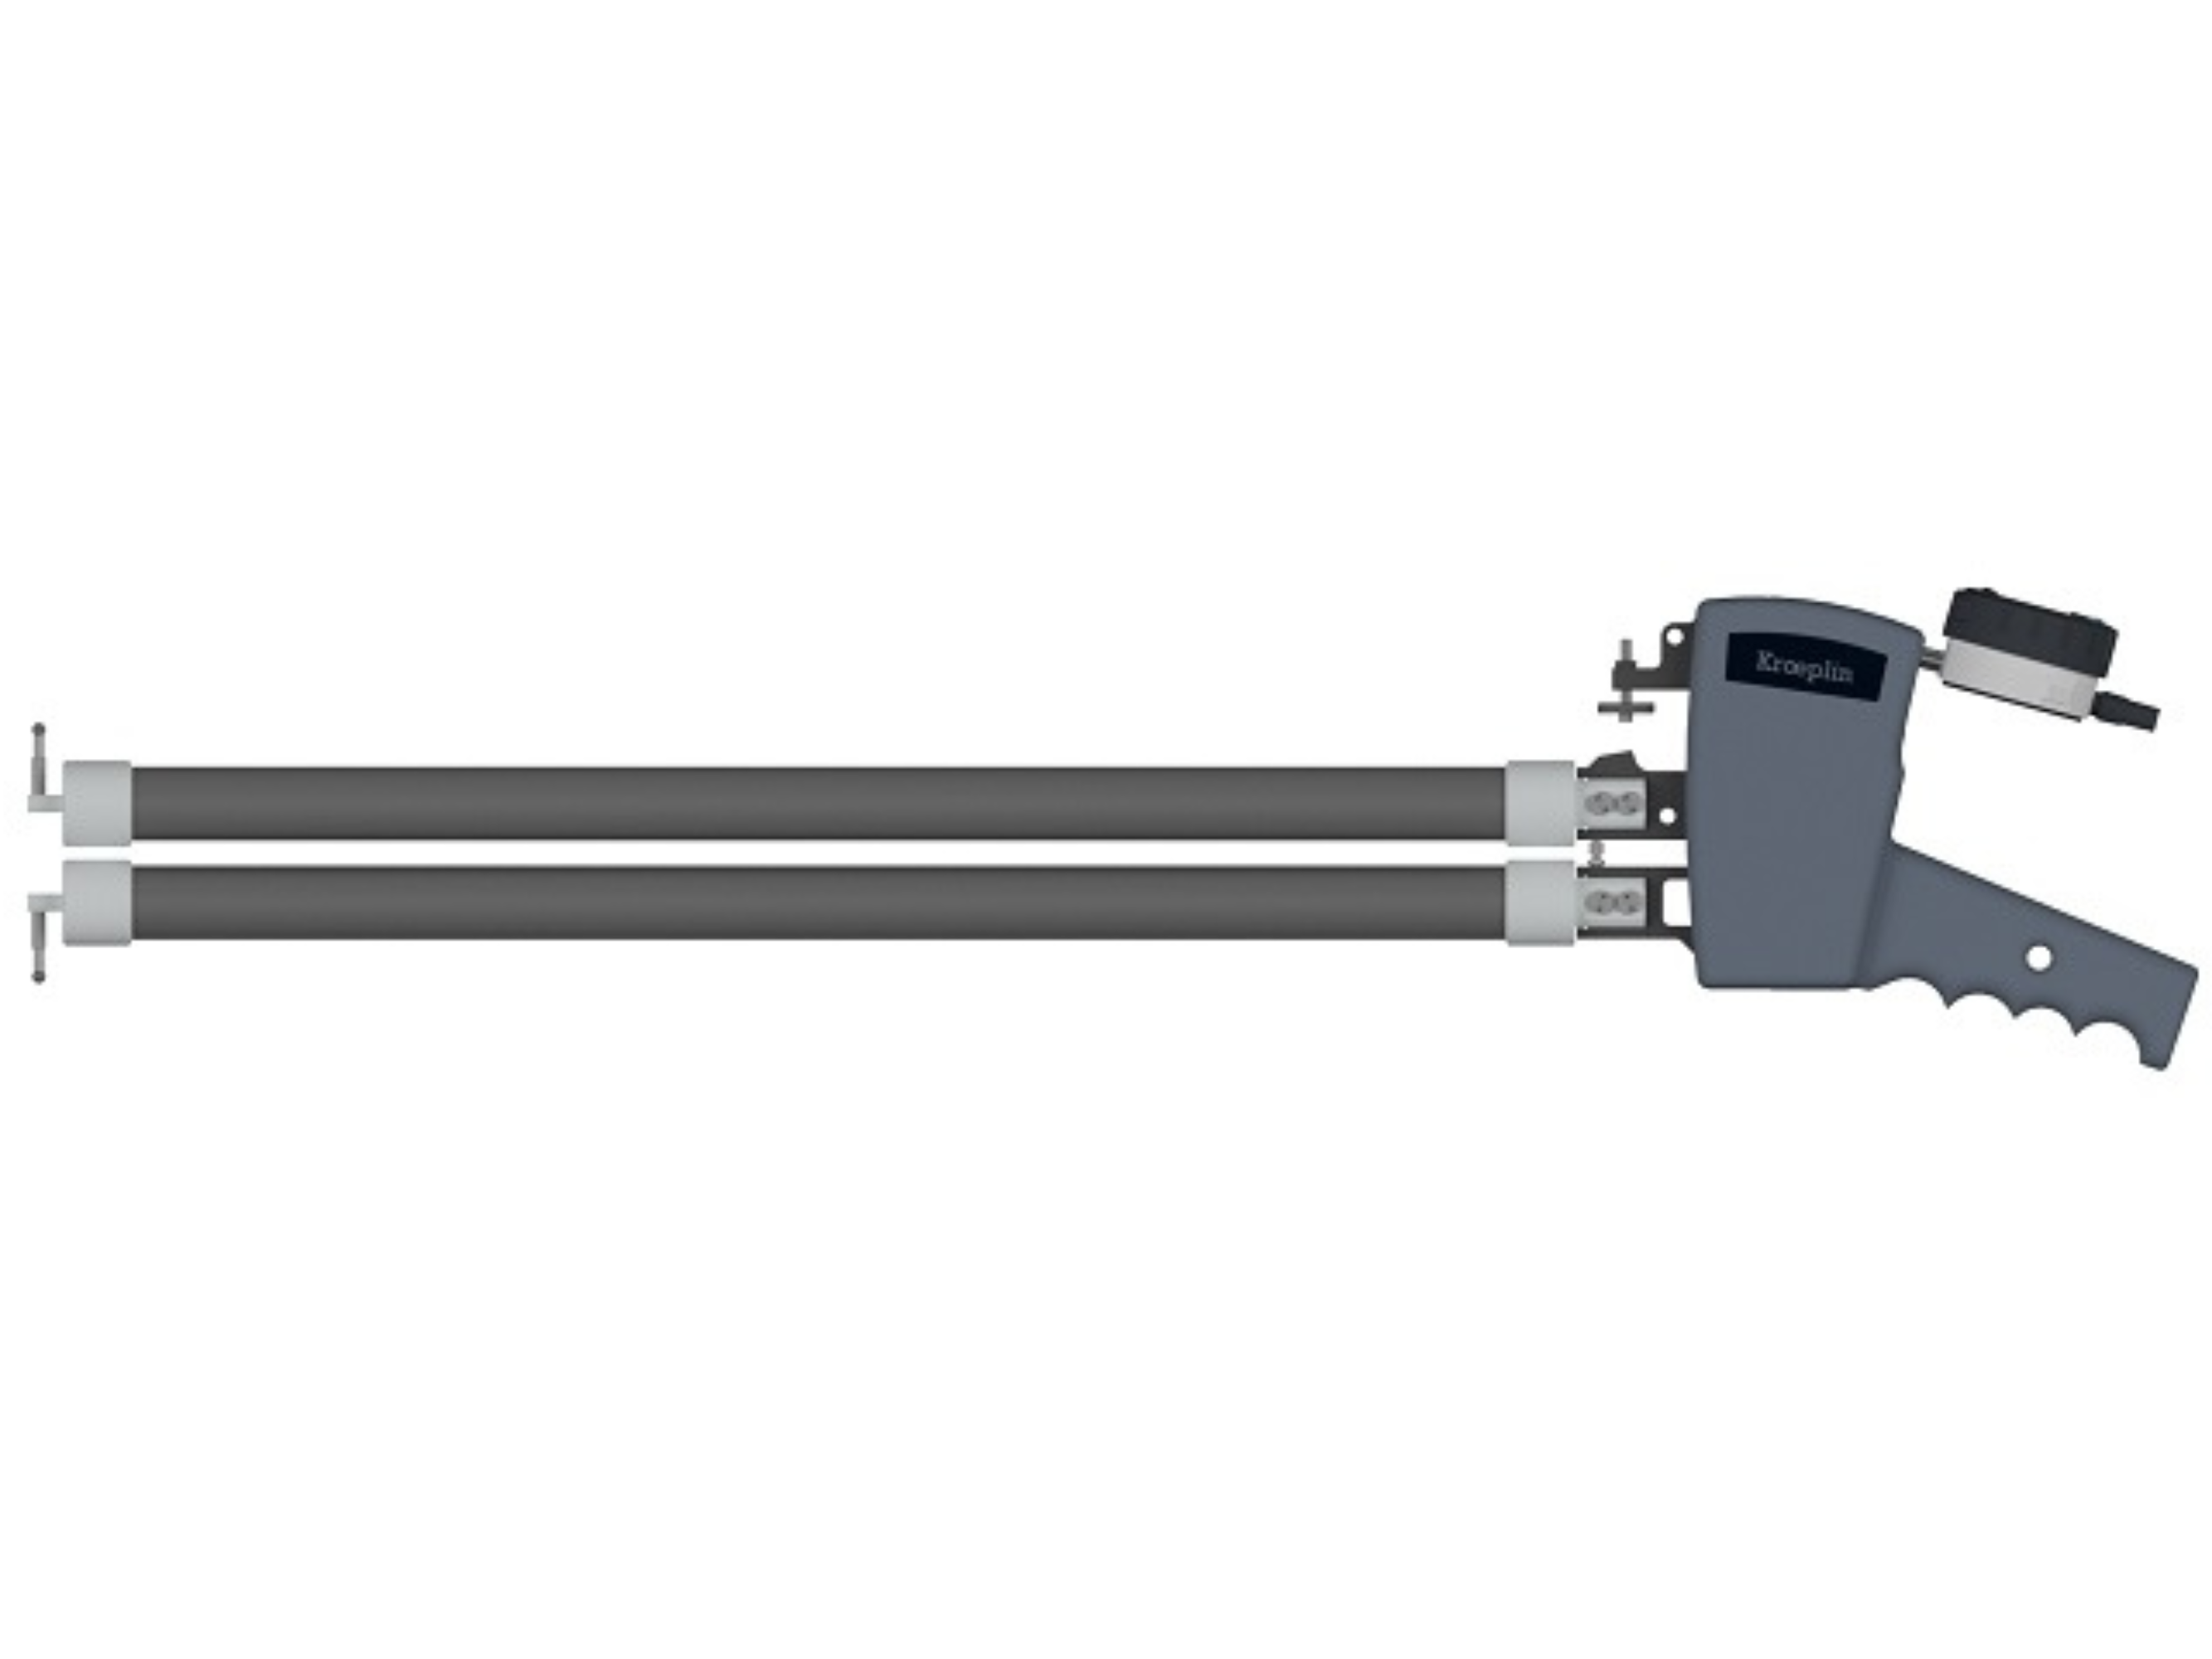 Digital Internal Caliper Gauge 90-190mm, 0.01mm